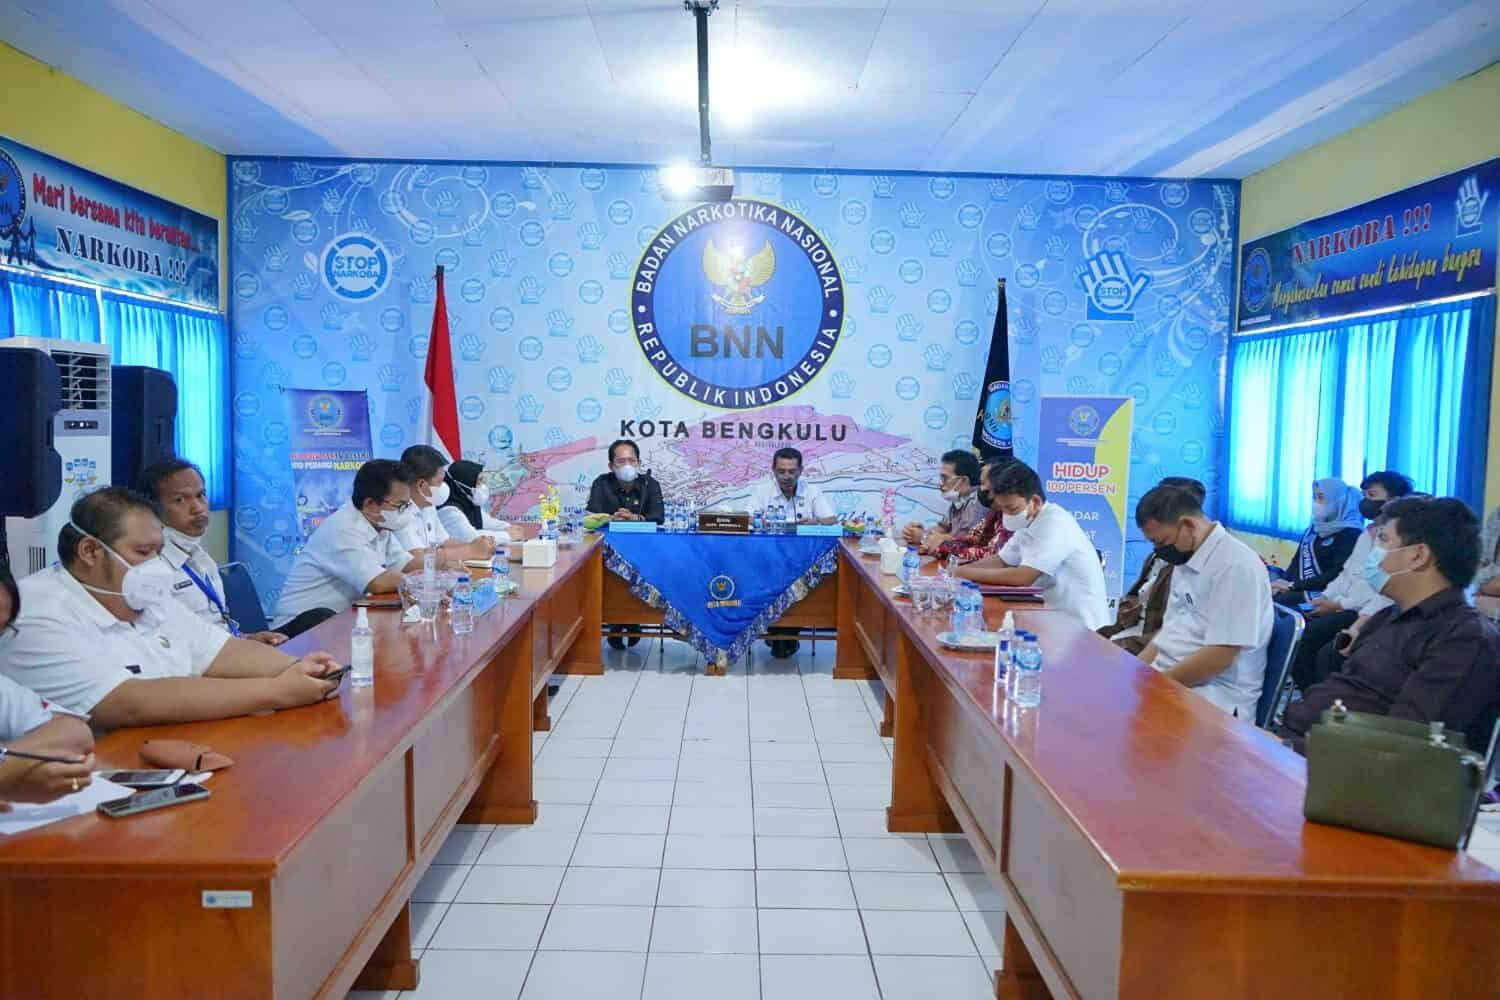 Komisi I DPRD Kota Bengkulu Kunjungi BNN Kota Bengkulu Dalam Rangka Kunjungan Kerja Tahun 2022